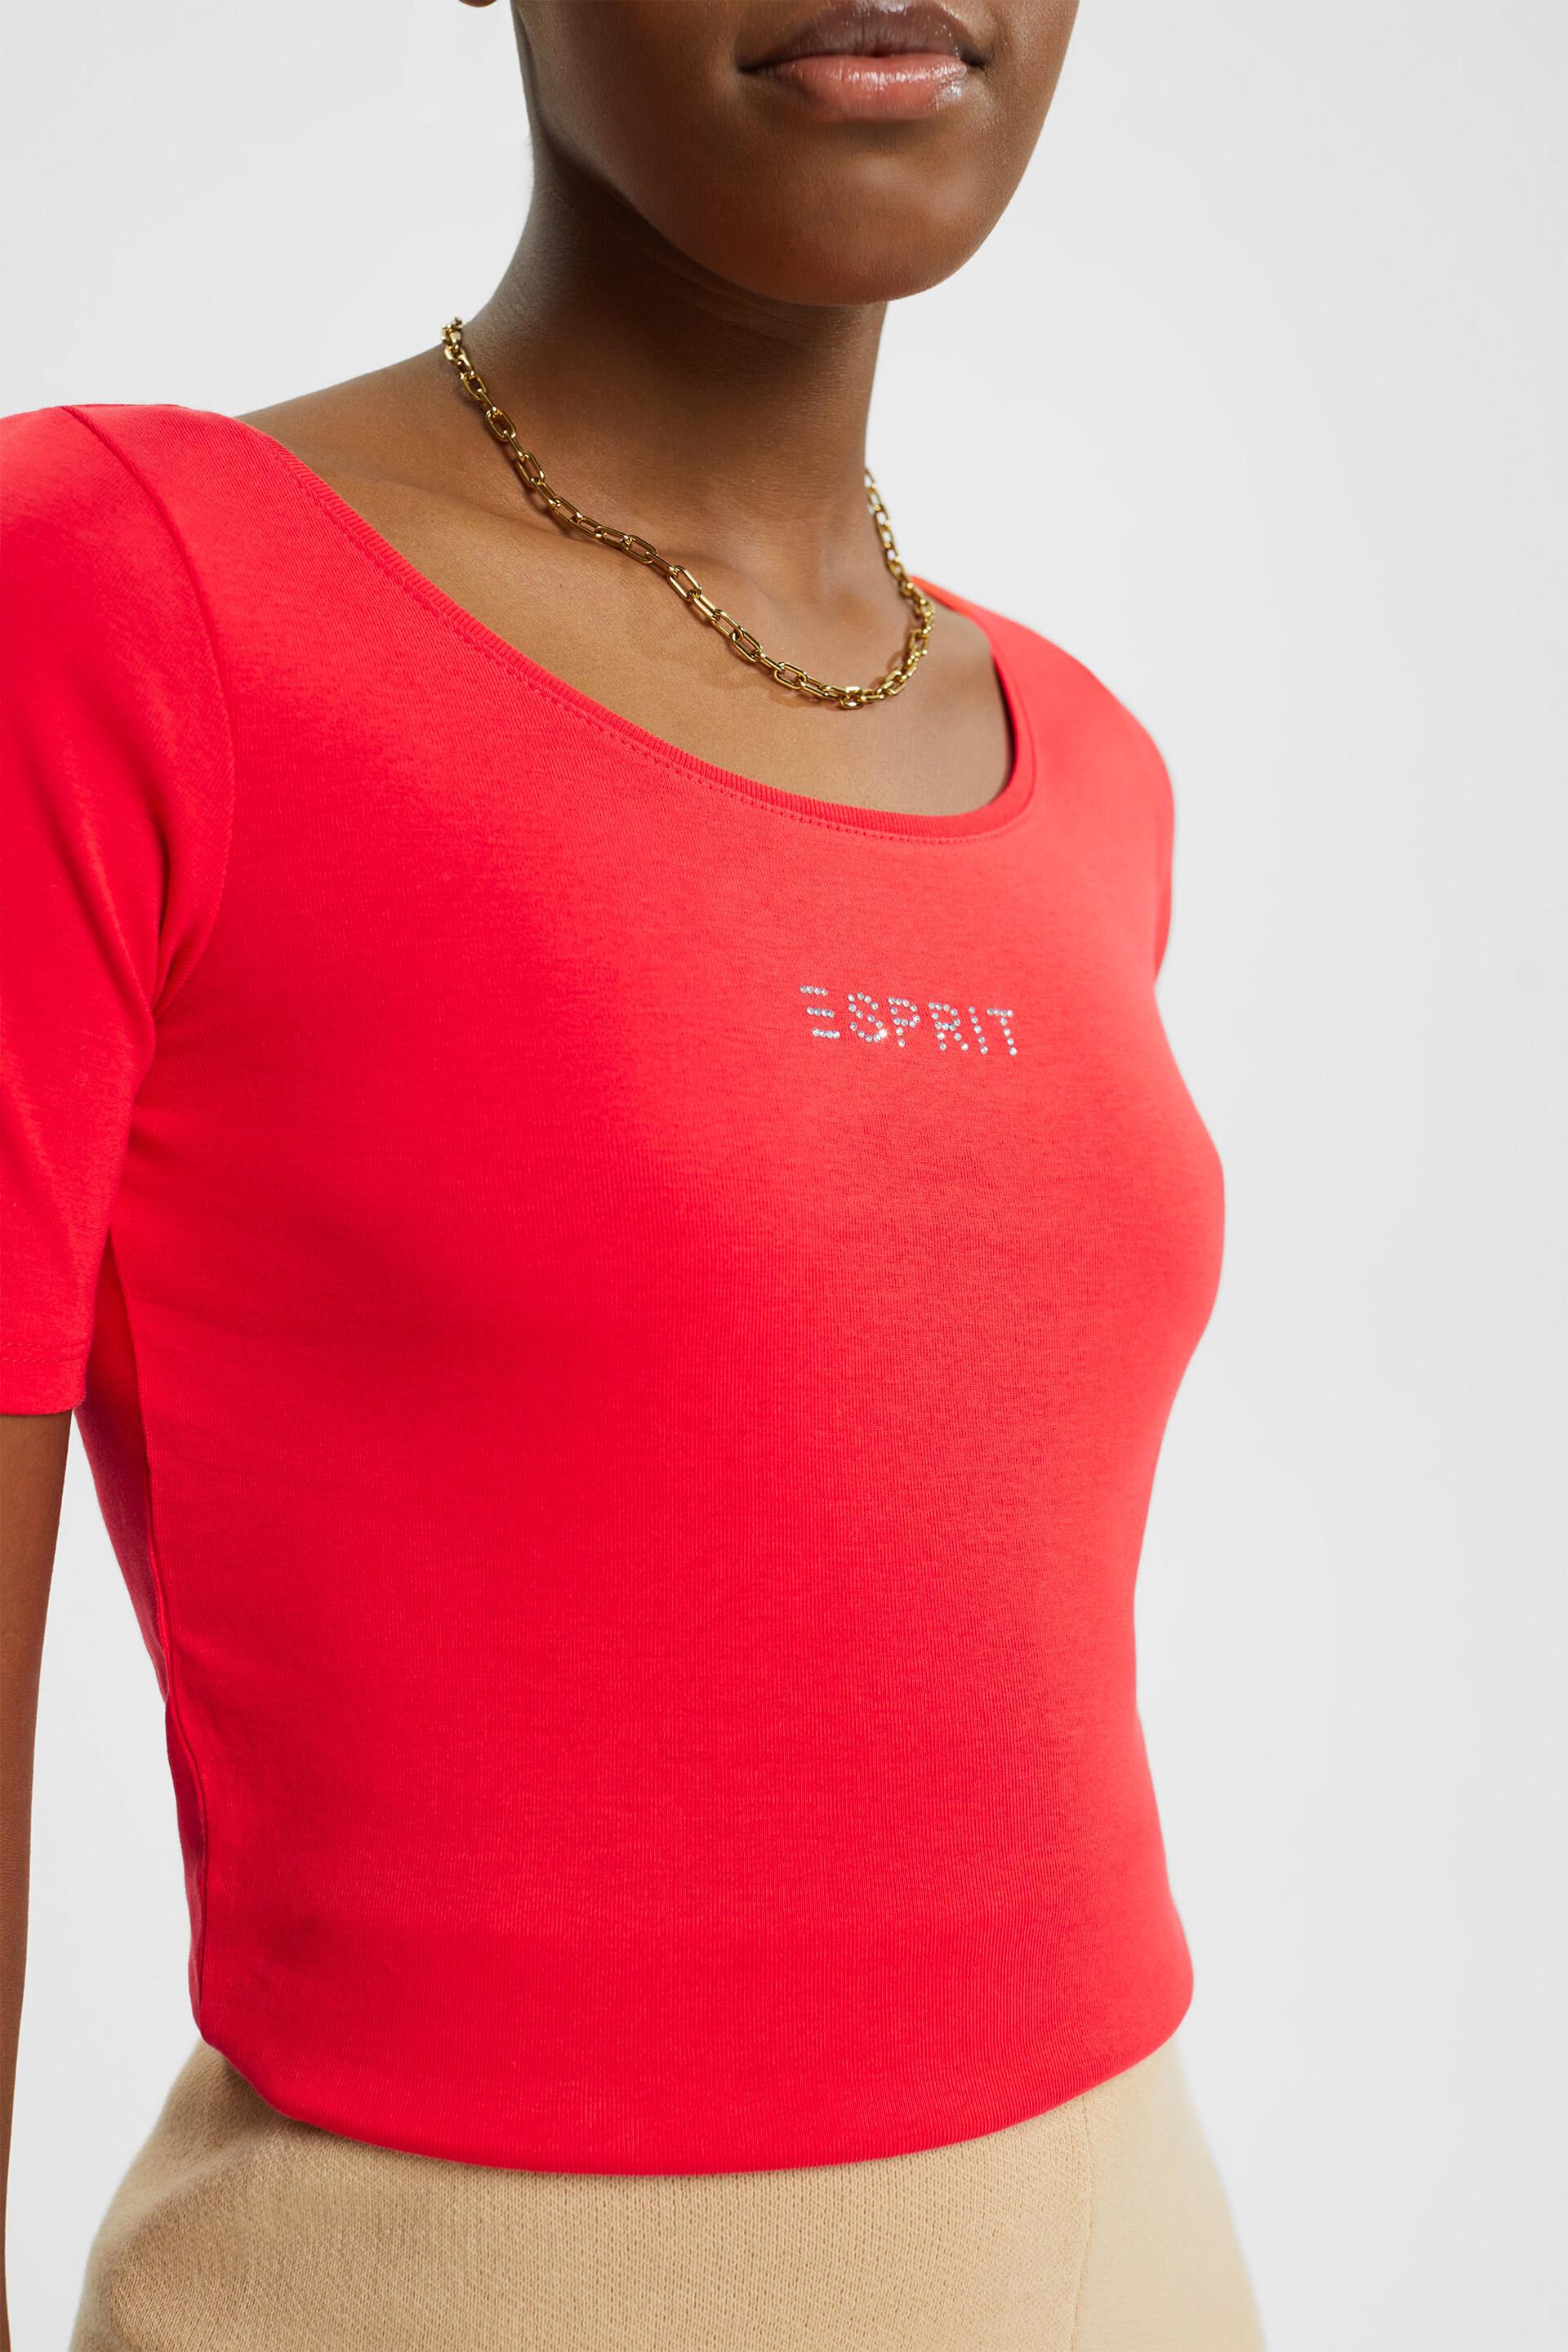 Esprit Damen T-Shirt mit Strass-Logo